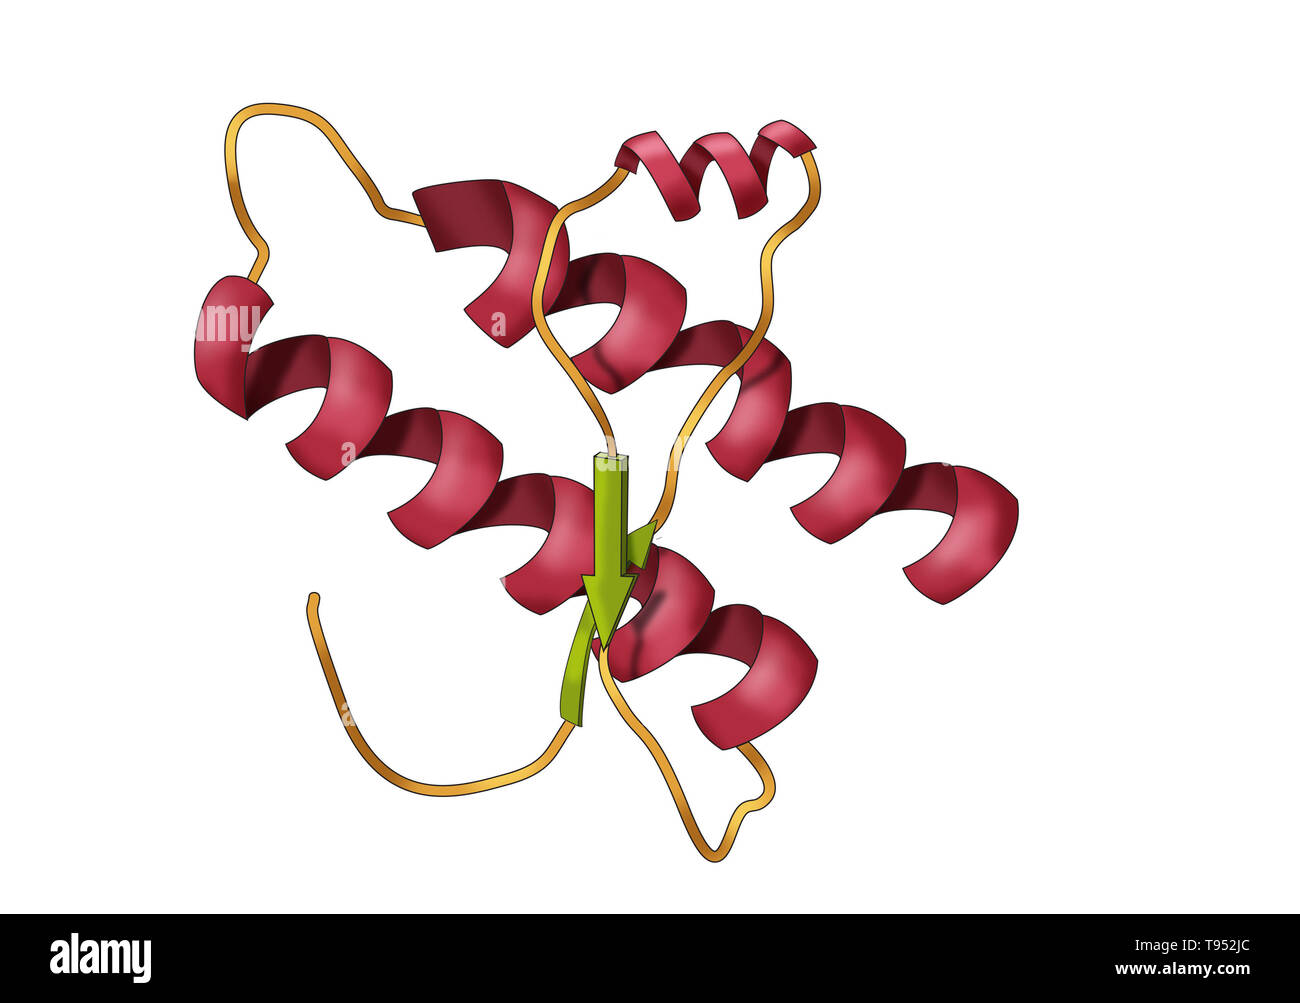 Modelo de una proteína priónica. Los priones son agentes infecciosos compuestos enteramente de una proteína material que pueda doblar en múltiples formas estructuralmente abstractos, al menos uno de los cuales es transmisible a otras proteínas priónicas, conduciendo a la enfermedad en una forma que es epidemiológicamente comparable a la propagación de la infección viral. Los priones se compone de la proteína del prión se cree que la causa de las encefalopatías espongiformes transmisibles, entre otras enfermedades. Foto de stock